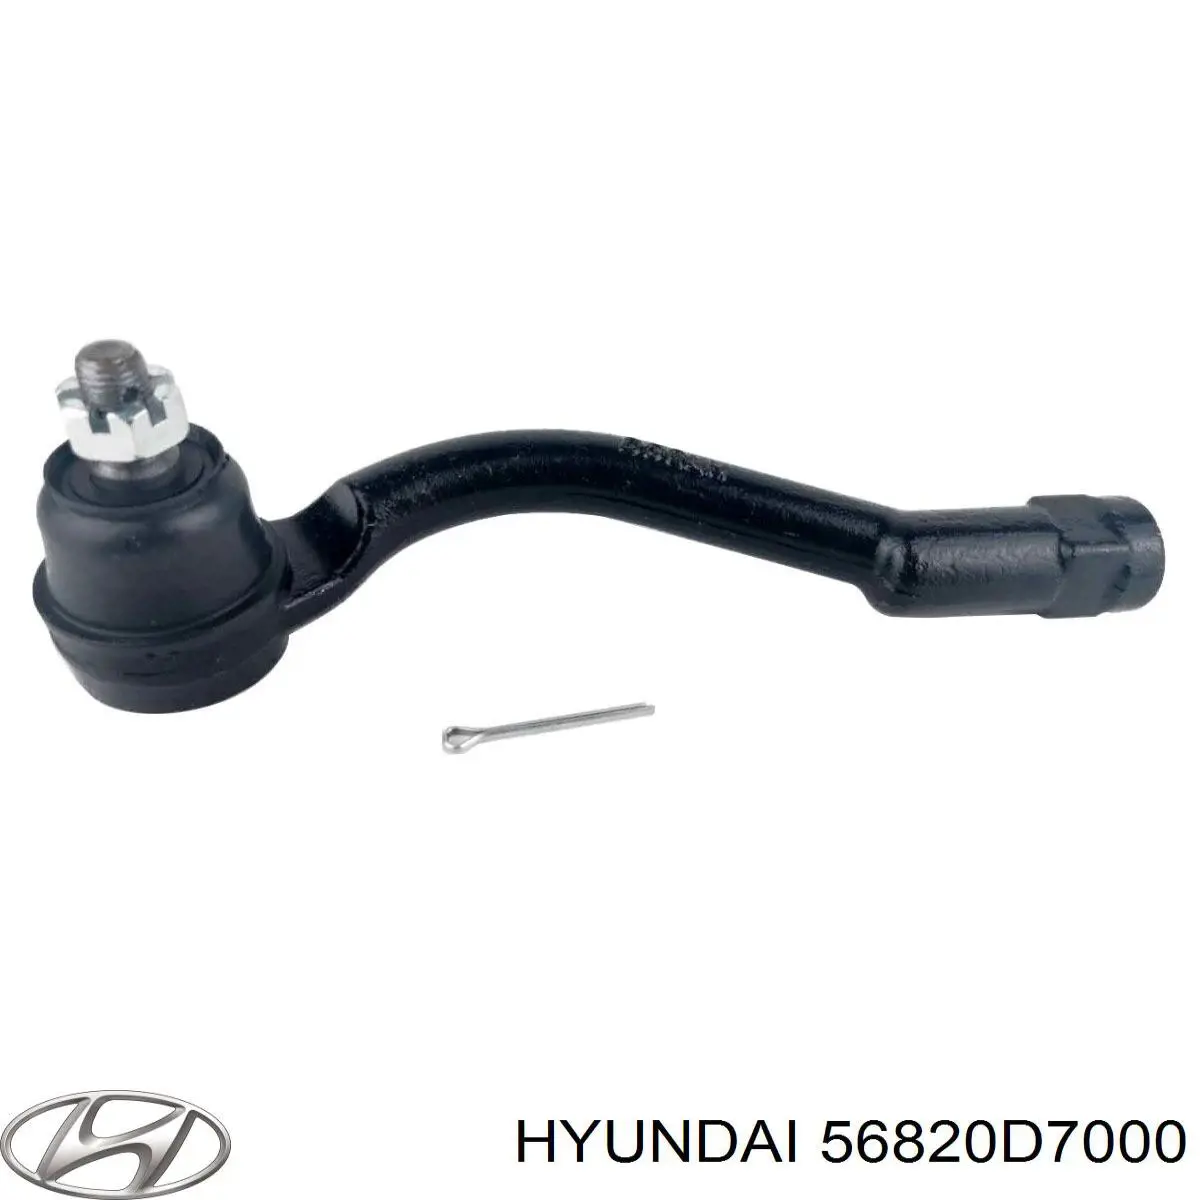 56820D7000 Hyundai/Kia rótula barra de acoplamiento exterior